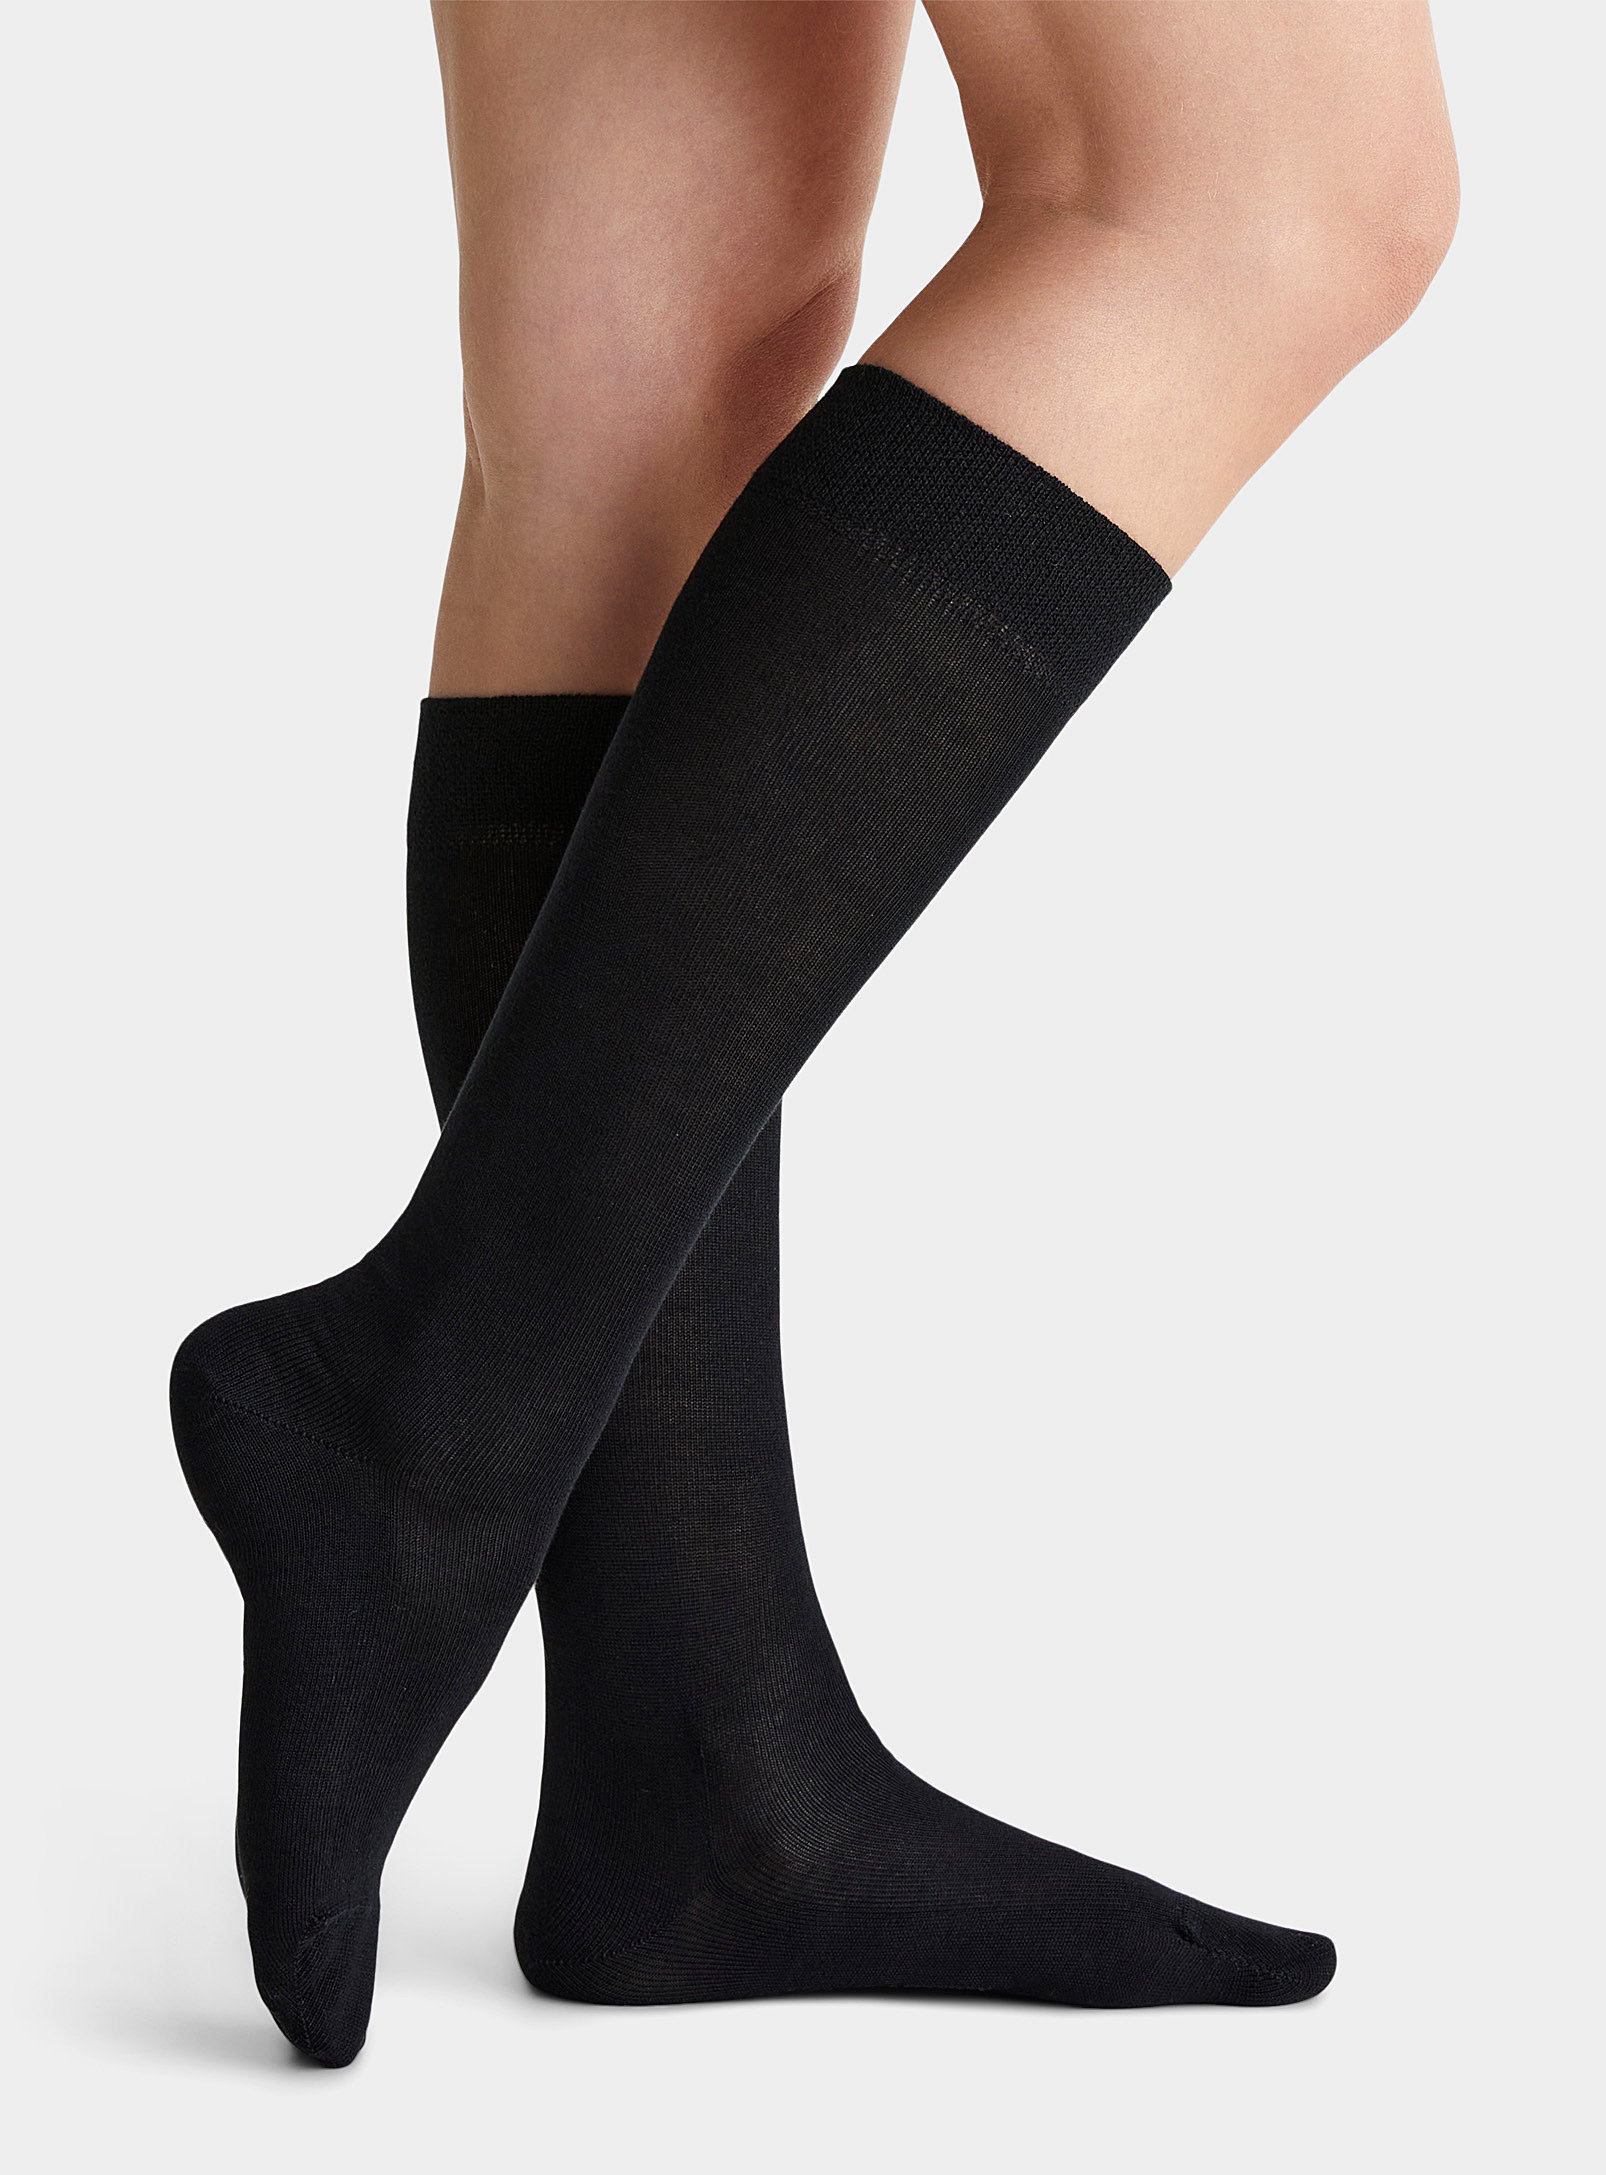 FALKE - Women's Non-binding knee sock